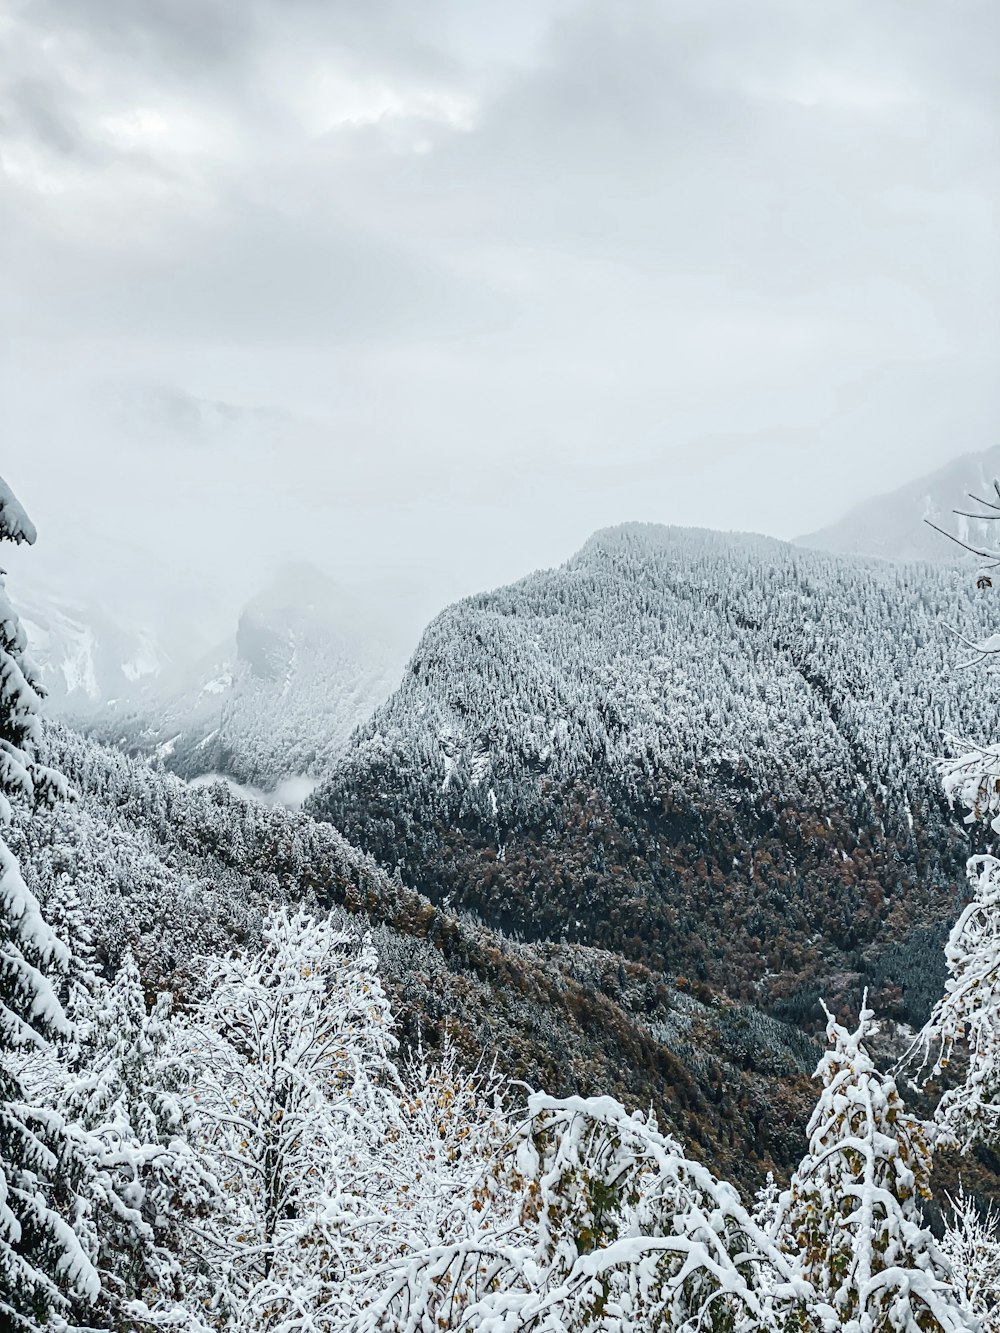 Una vista de una cadena montañosa nevada con árboles en primer plano